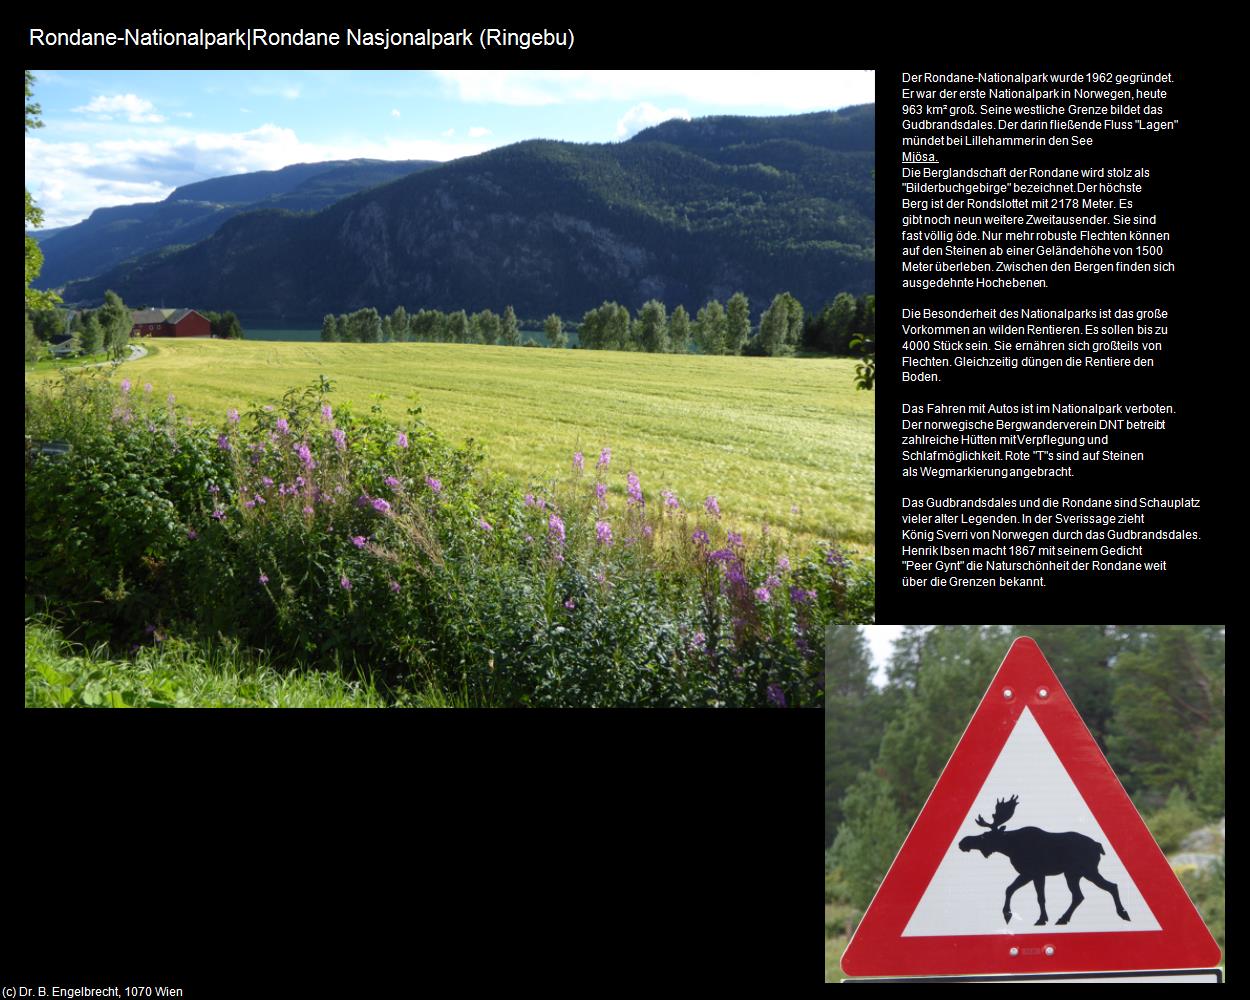 Rondane-Nationalpark|Rondane Nasjonalpark (Ringebu) in Kulturatlas-REISE nach NORWEGEN(c)B.Engelbrecht